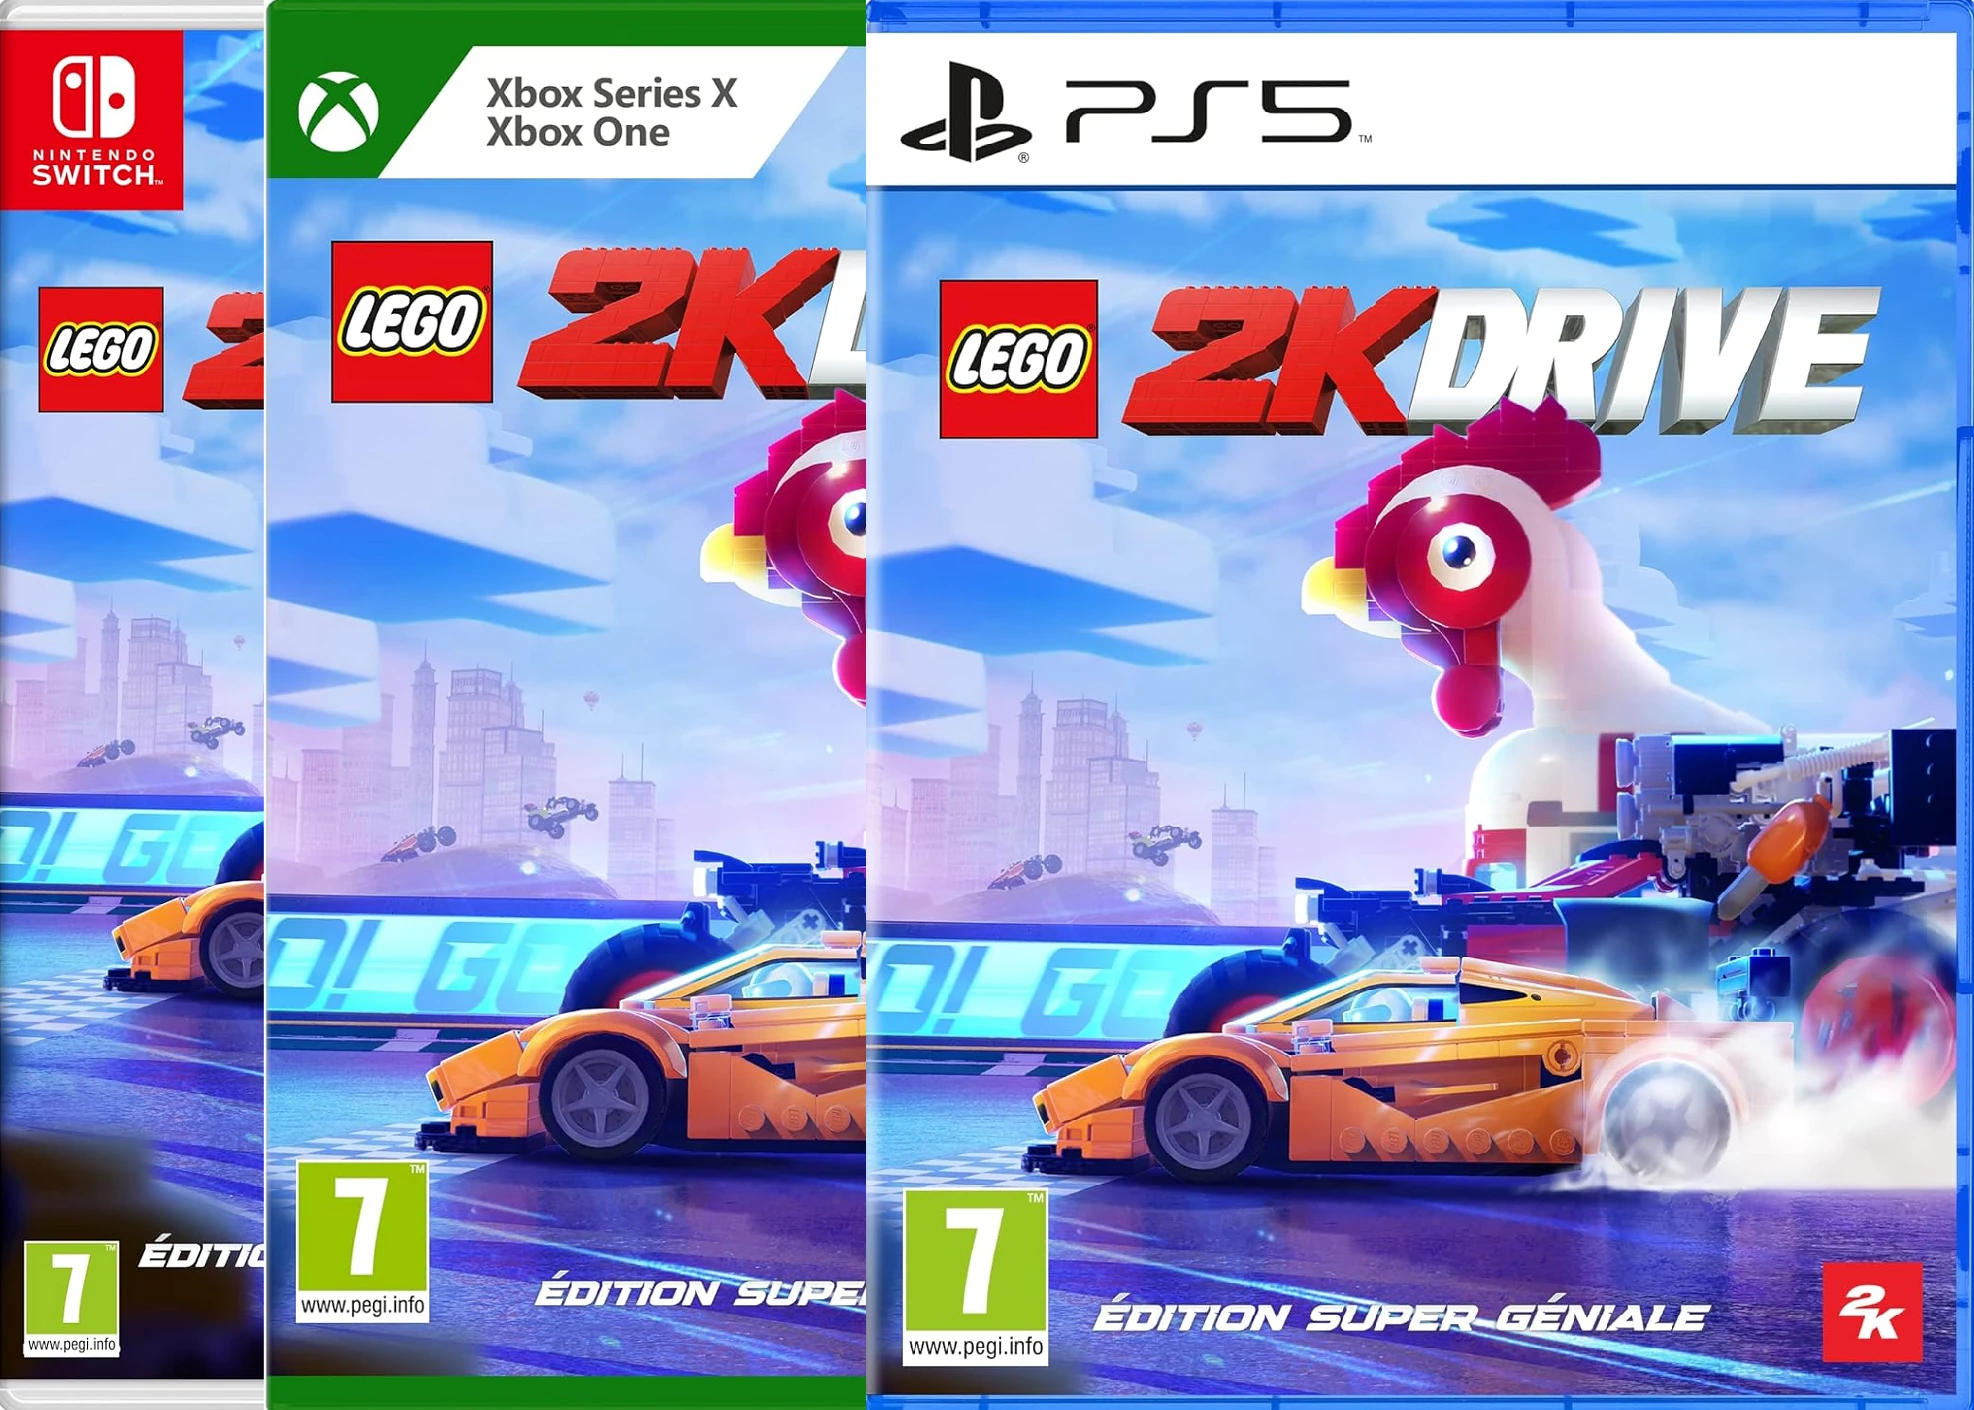 LEGO 2K Drive - Edition Super Géniale 